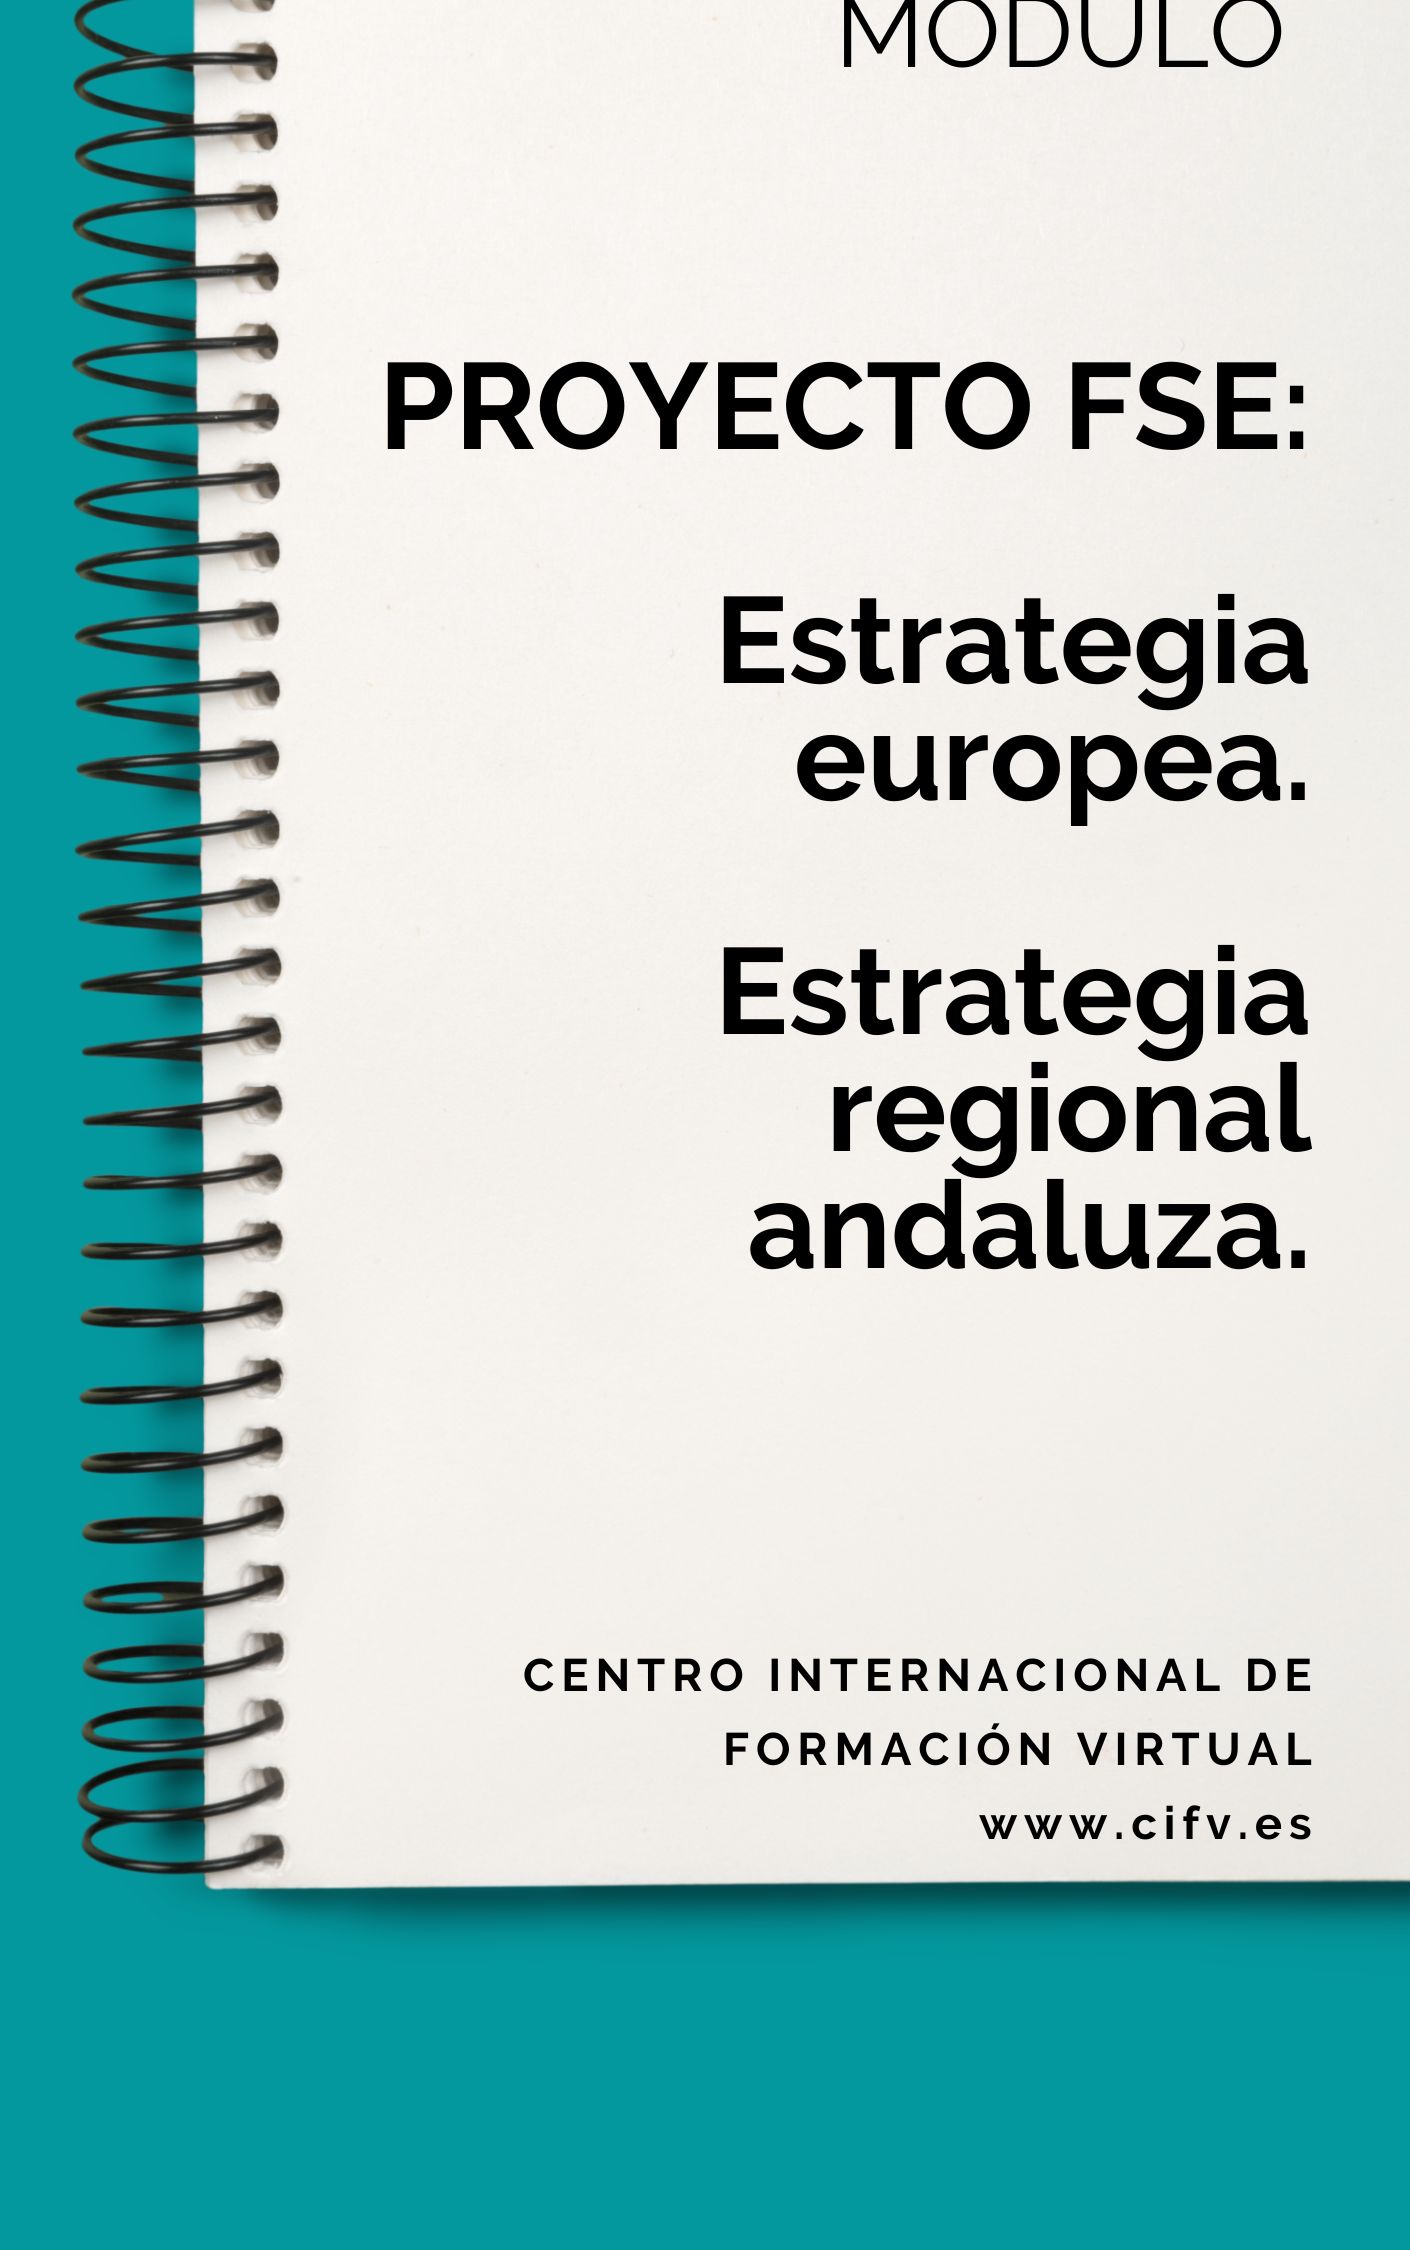 Módulo: PROYECTO FSE:  Estrategia europea.  Estrategia regional andaluza.